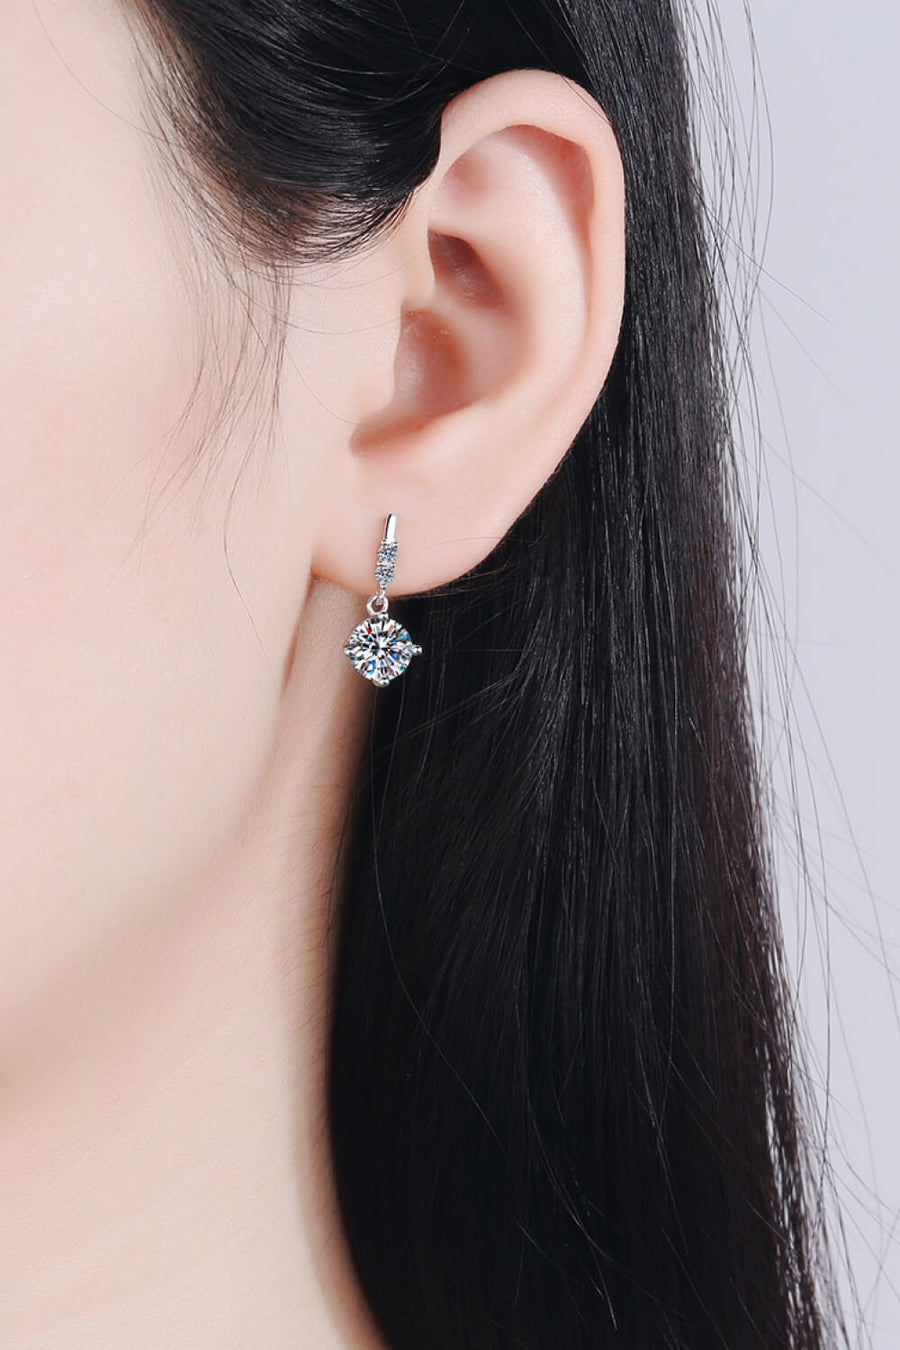 Best Diamond Earrings Jewelry Gifts for Women | 1 Carat Round Diamond Drop Earrings | MASON New York